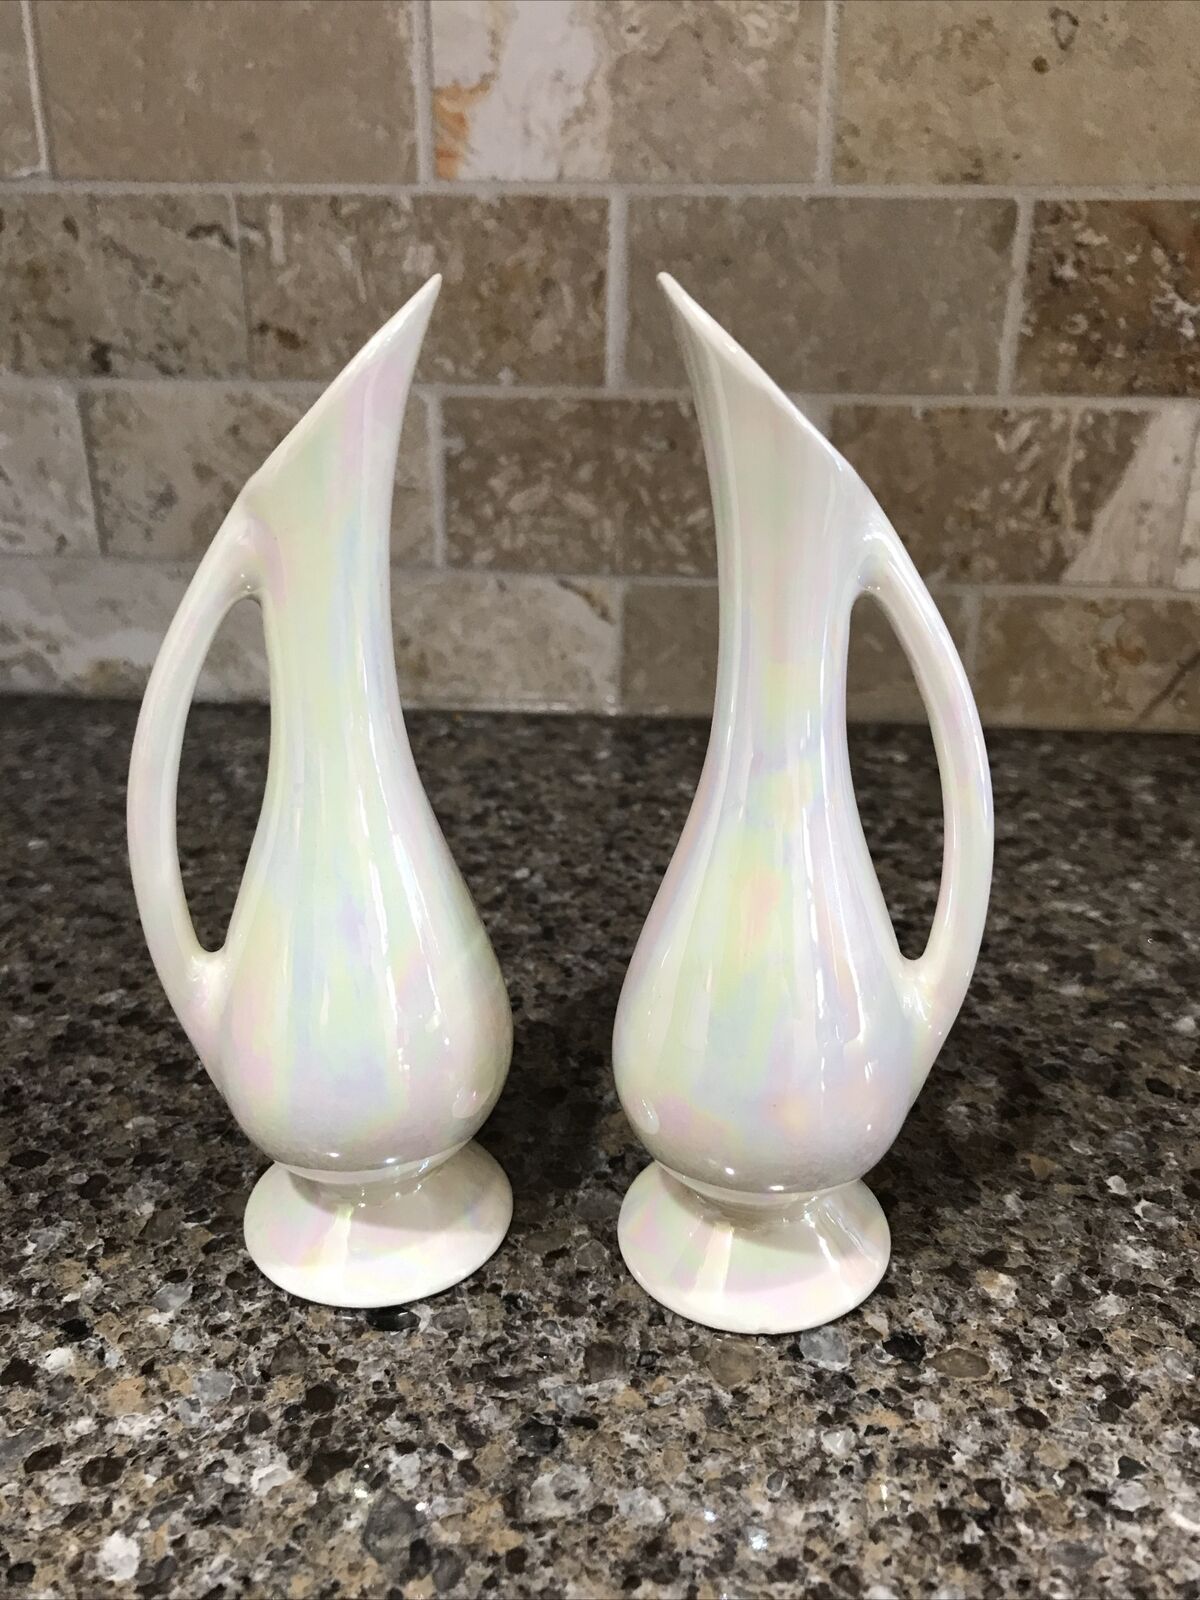 Two Iridescent White Glazed Ceramic Ewer Style Bud Vase 5.5” Initiated EUC